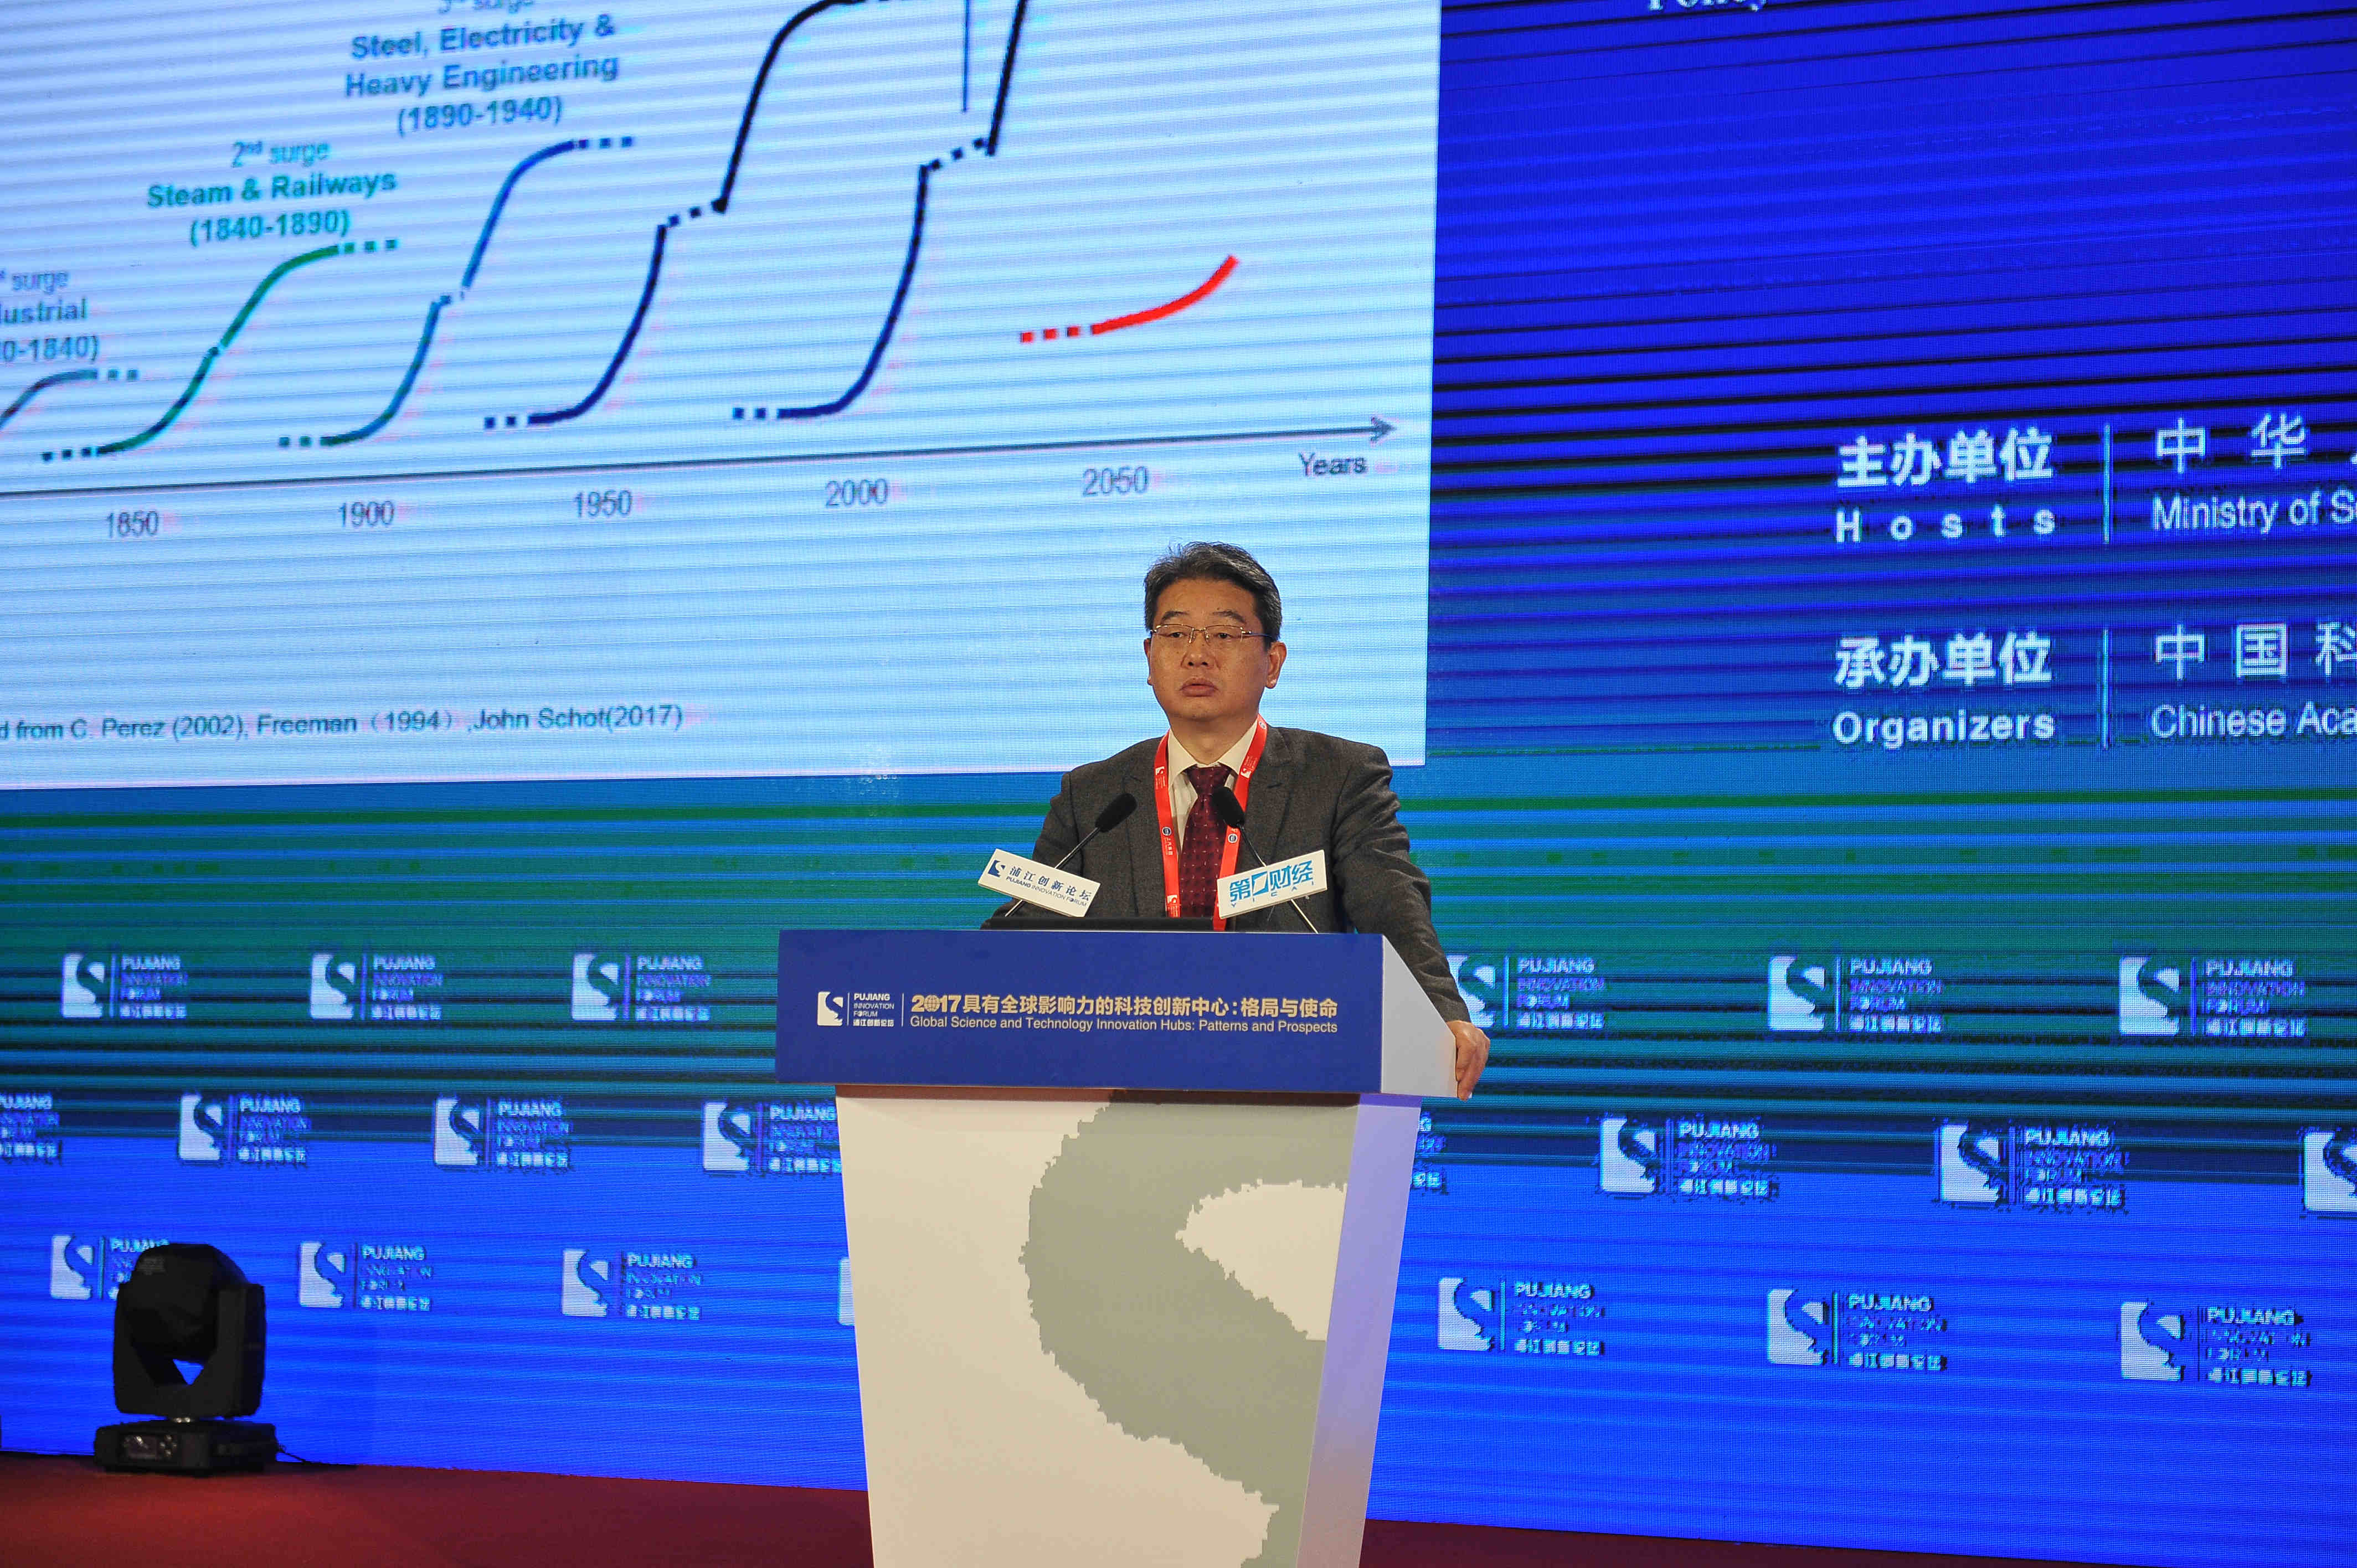 胡志坚博士:中国具备孕育世界级科技创新中心的潜力